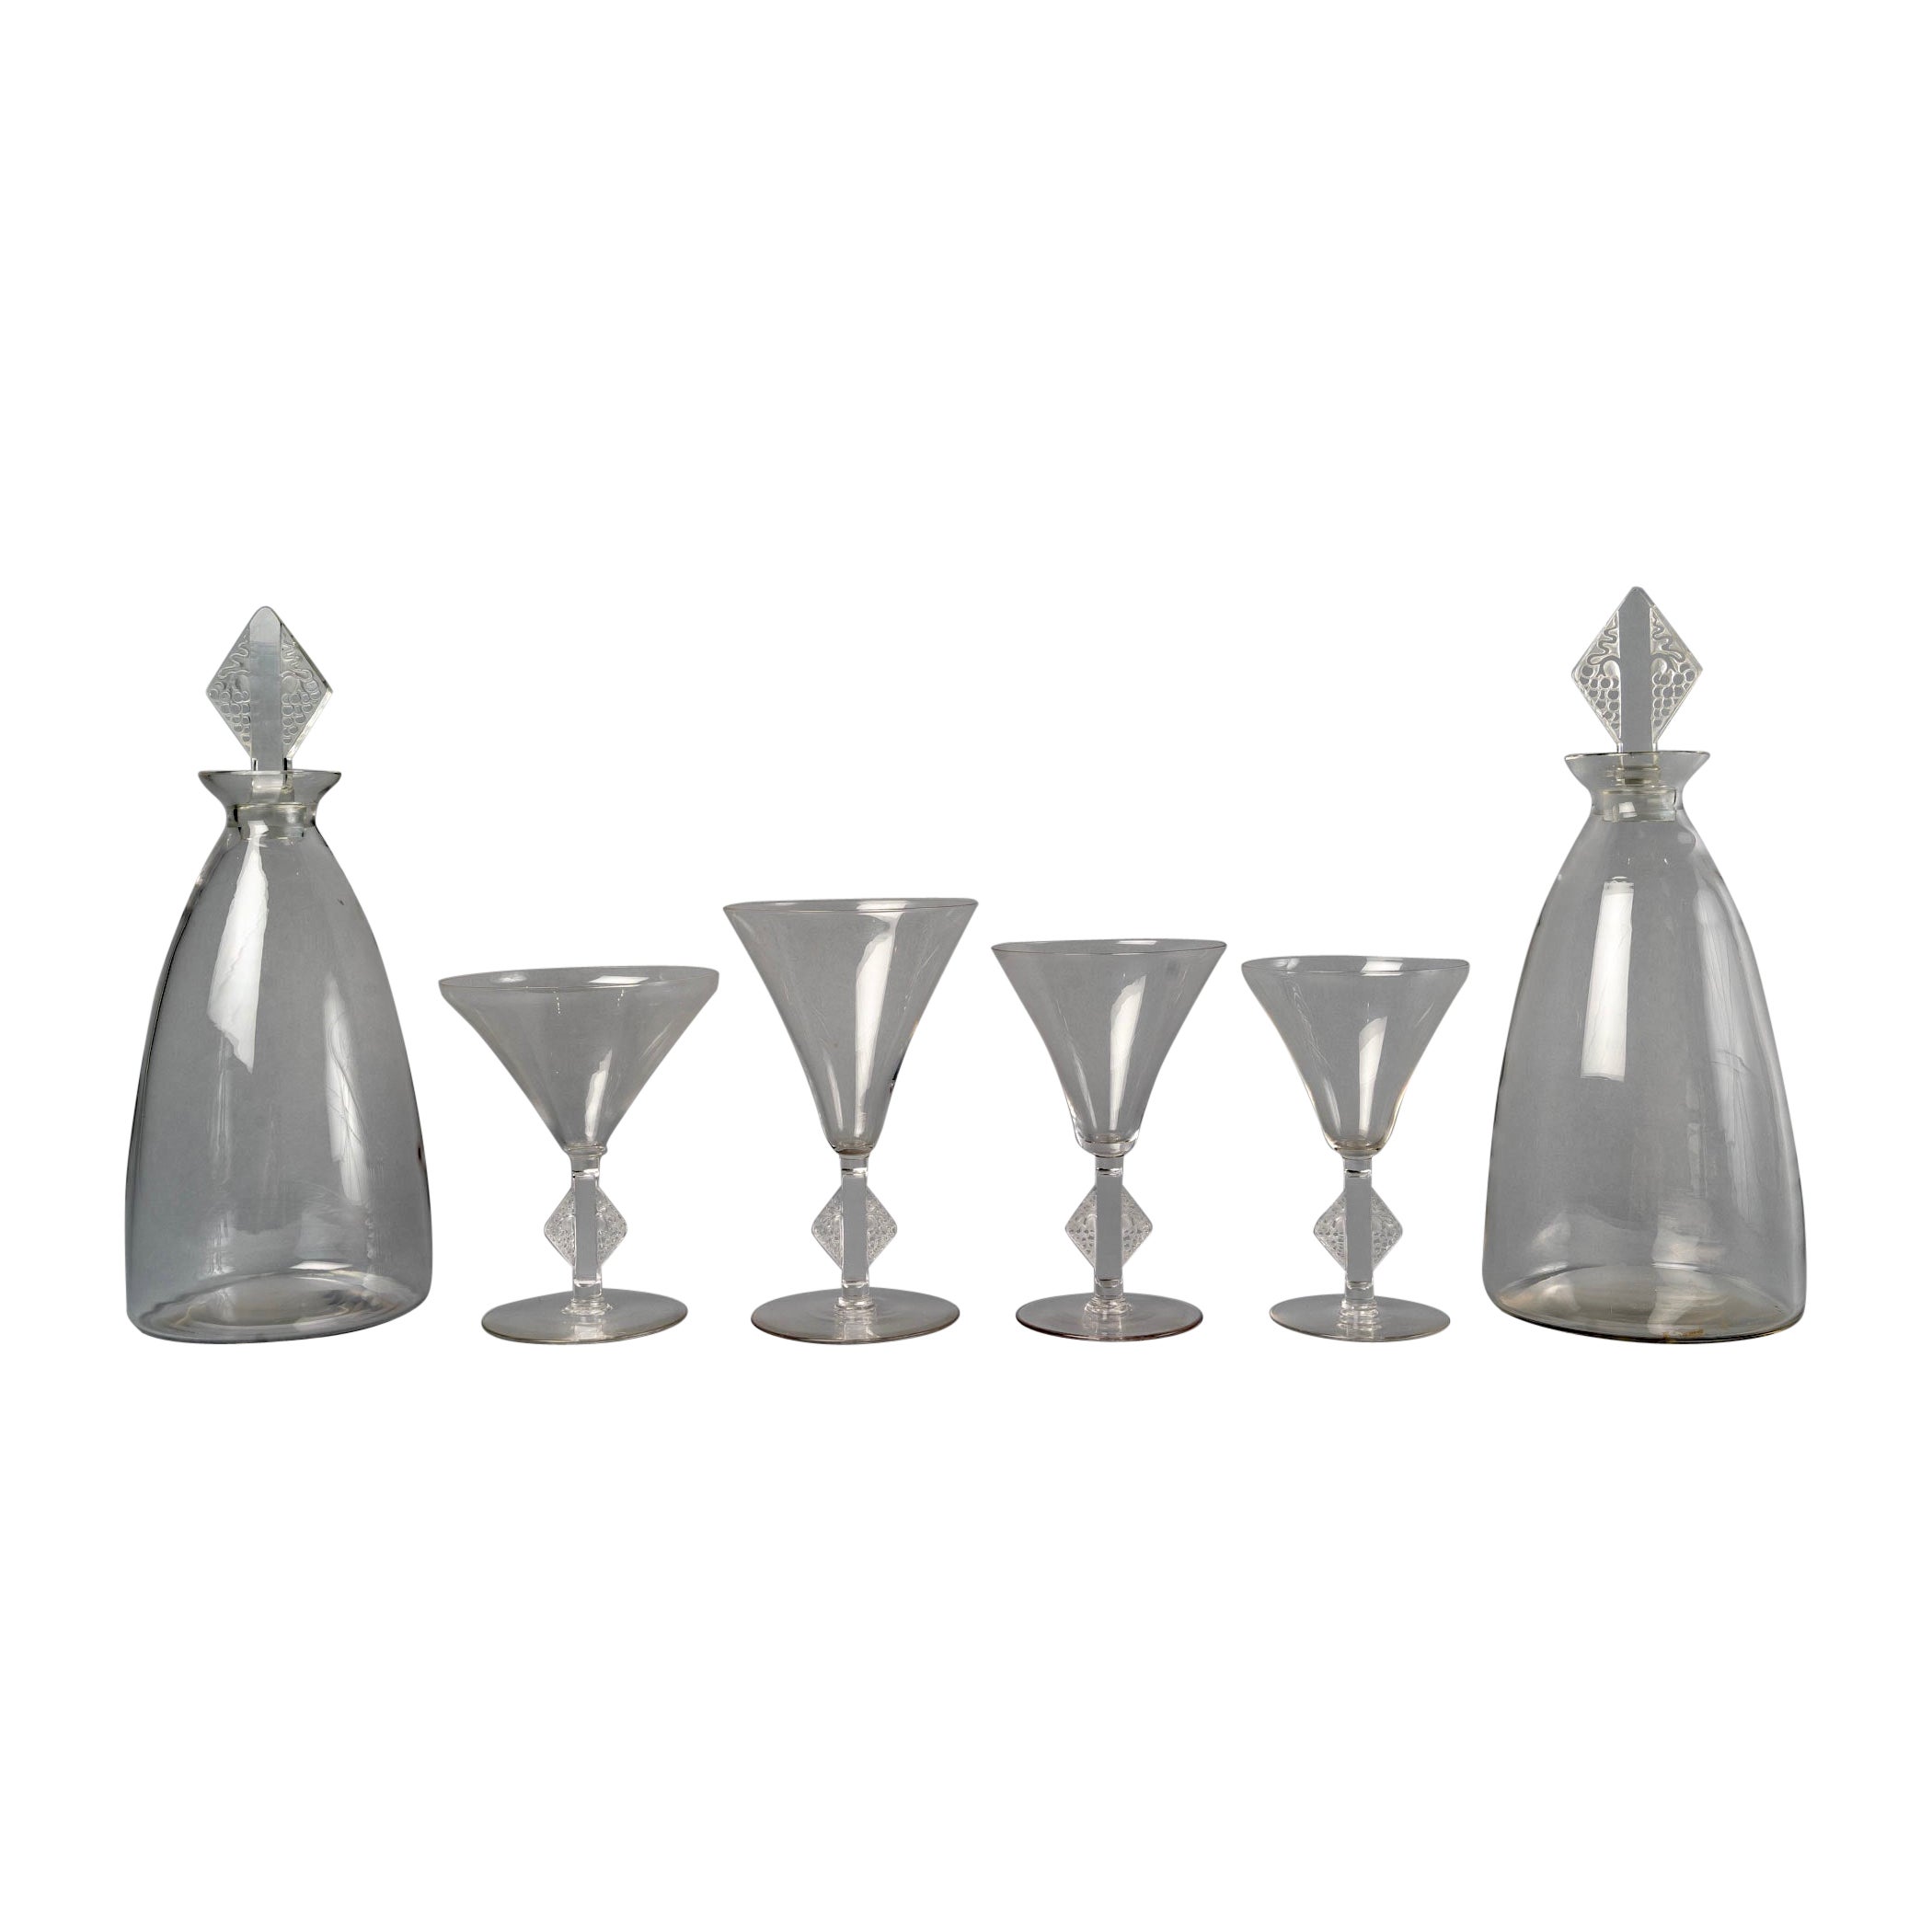 1924 René Lalique, Ensemble de verres de table Savergne Verre clair, 34 pièces